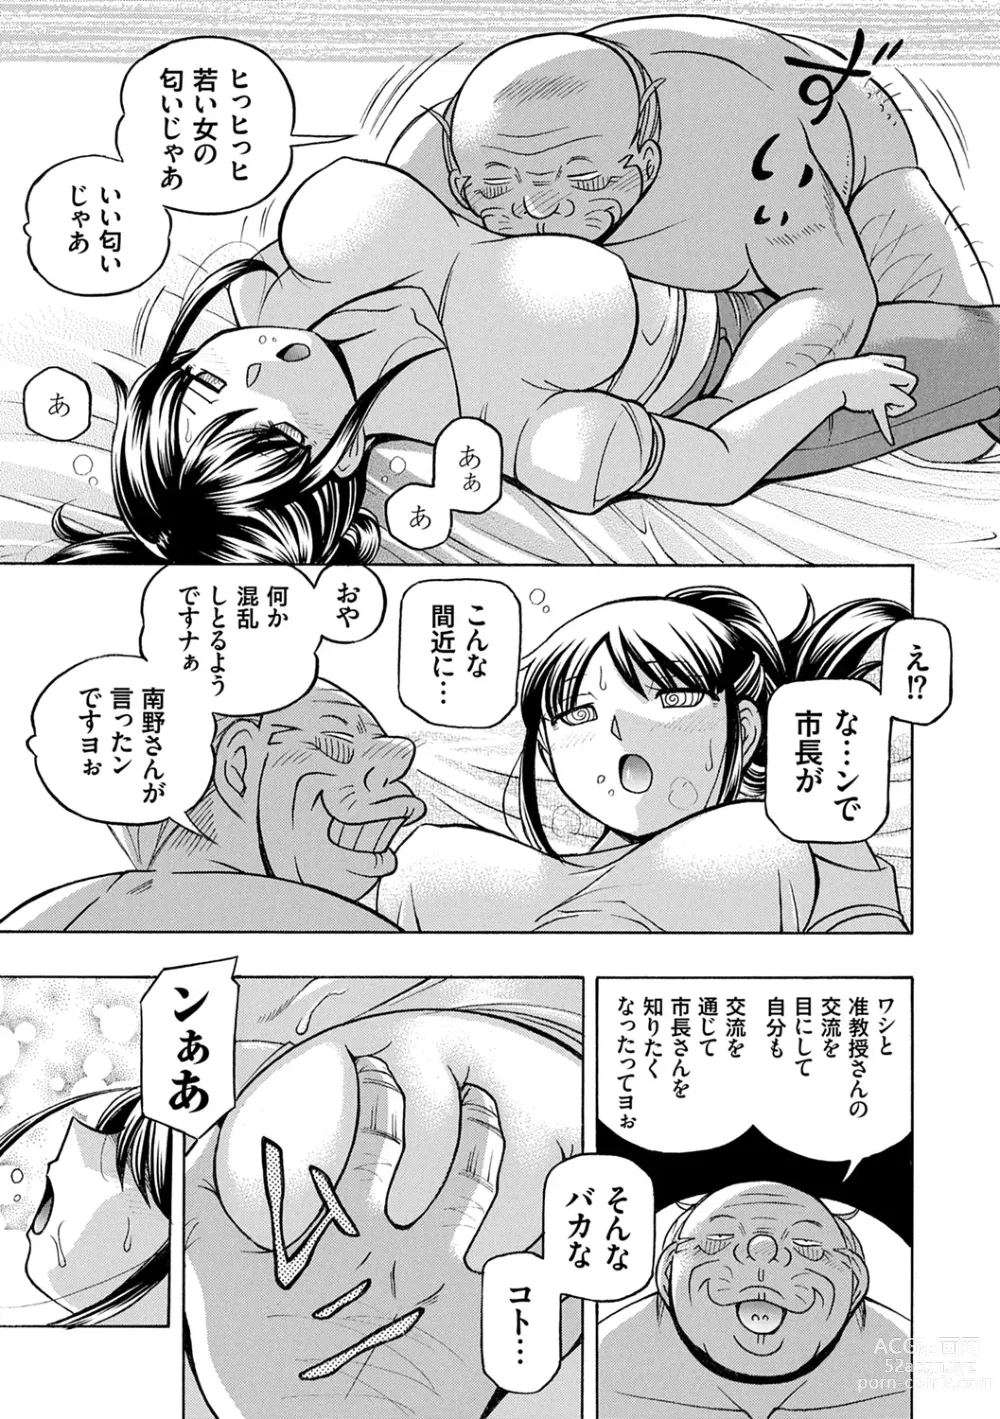 Page 27 of manga Joshidaisei Yuuka